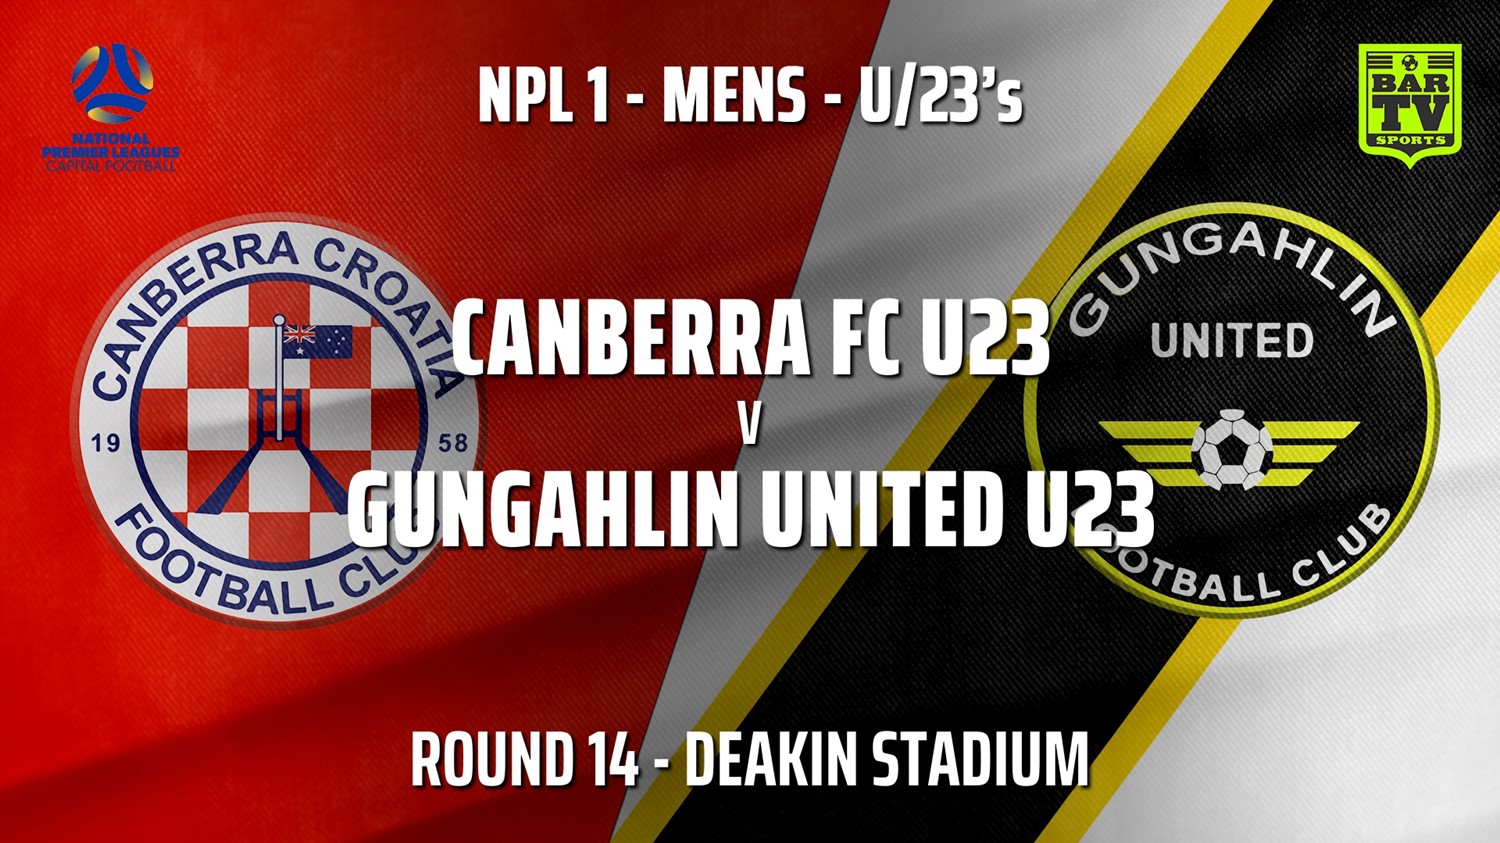 210718-Capital NPL U23 Round 14 - Canberra FC U23 v Gungahlin United U23 Slate Image